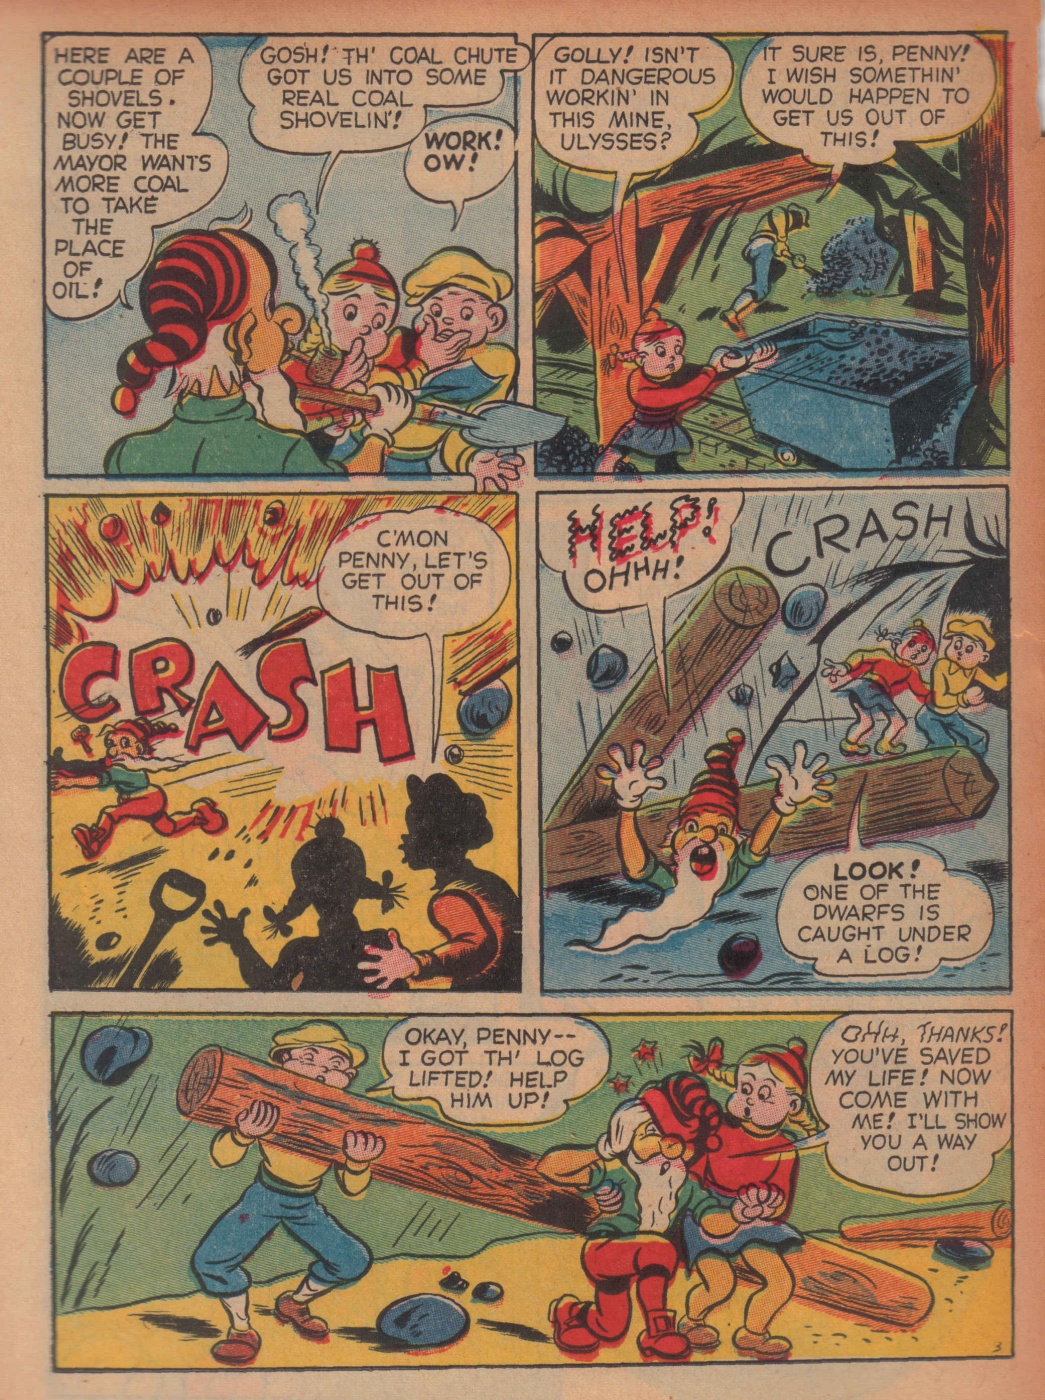 Super Dooper Funny Comics (26)